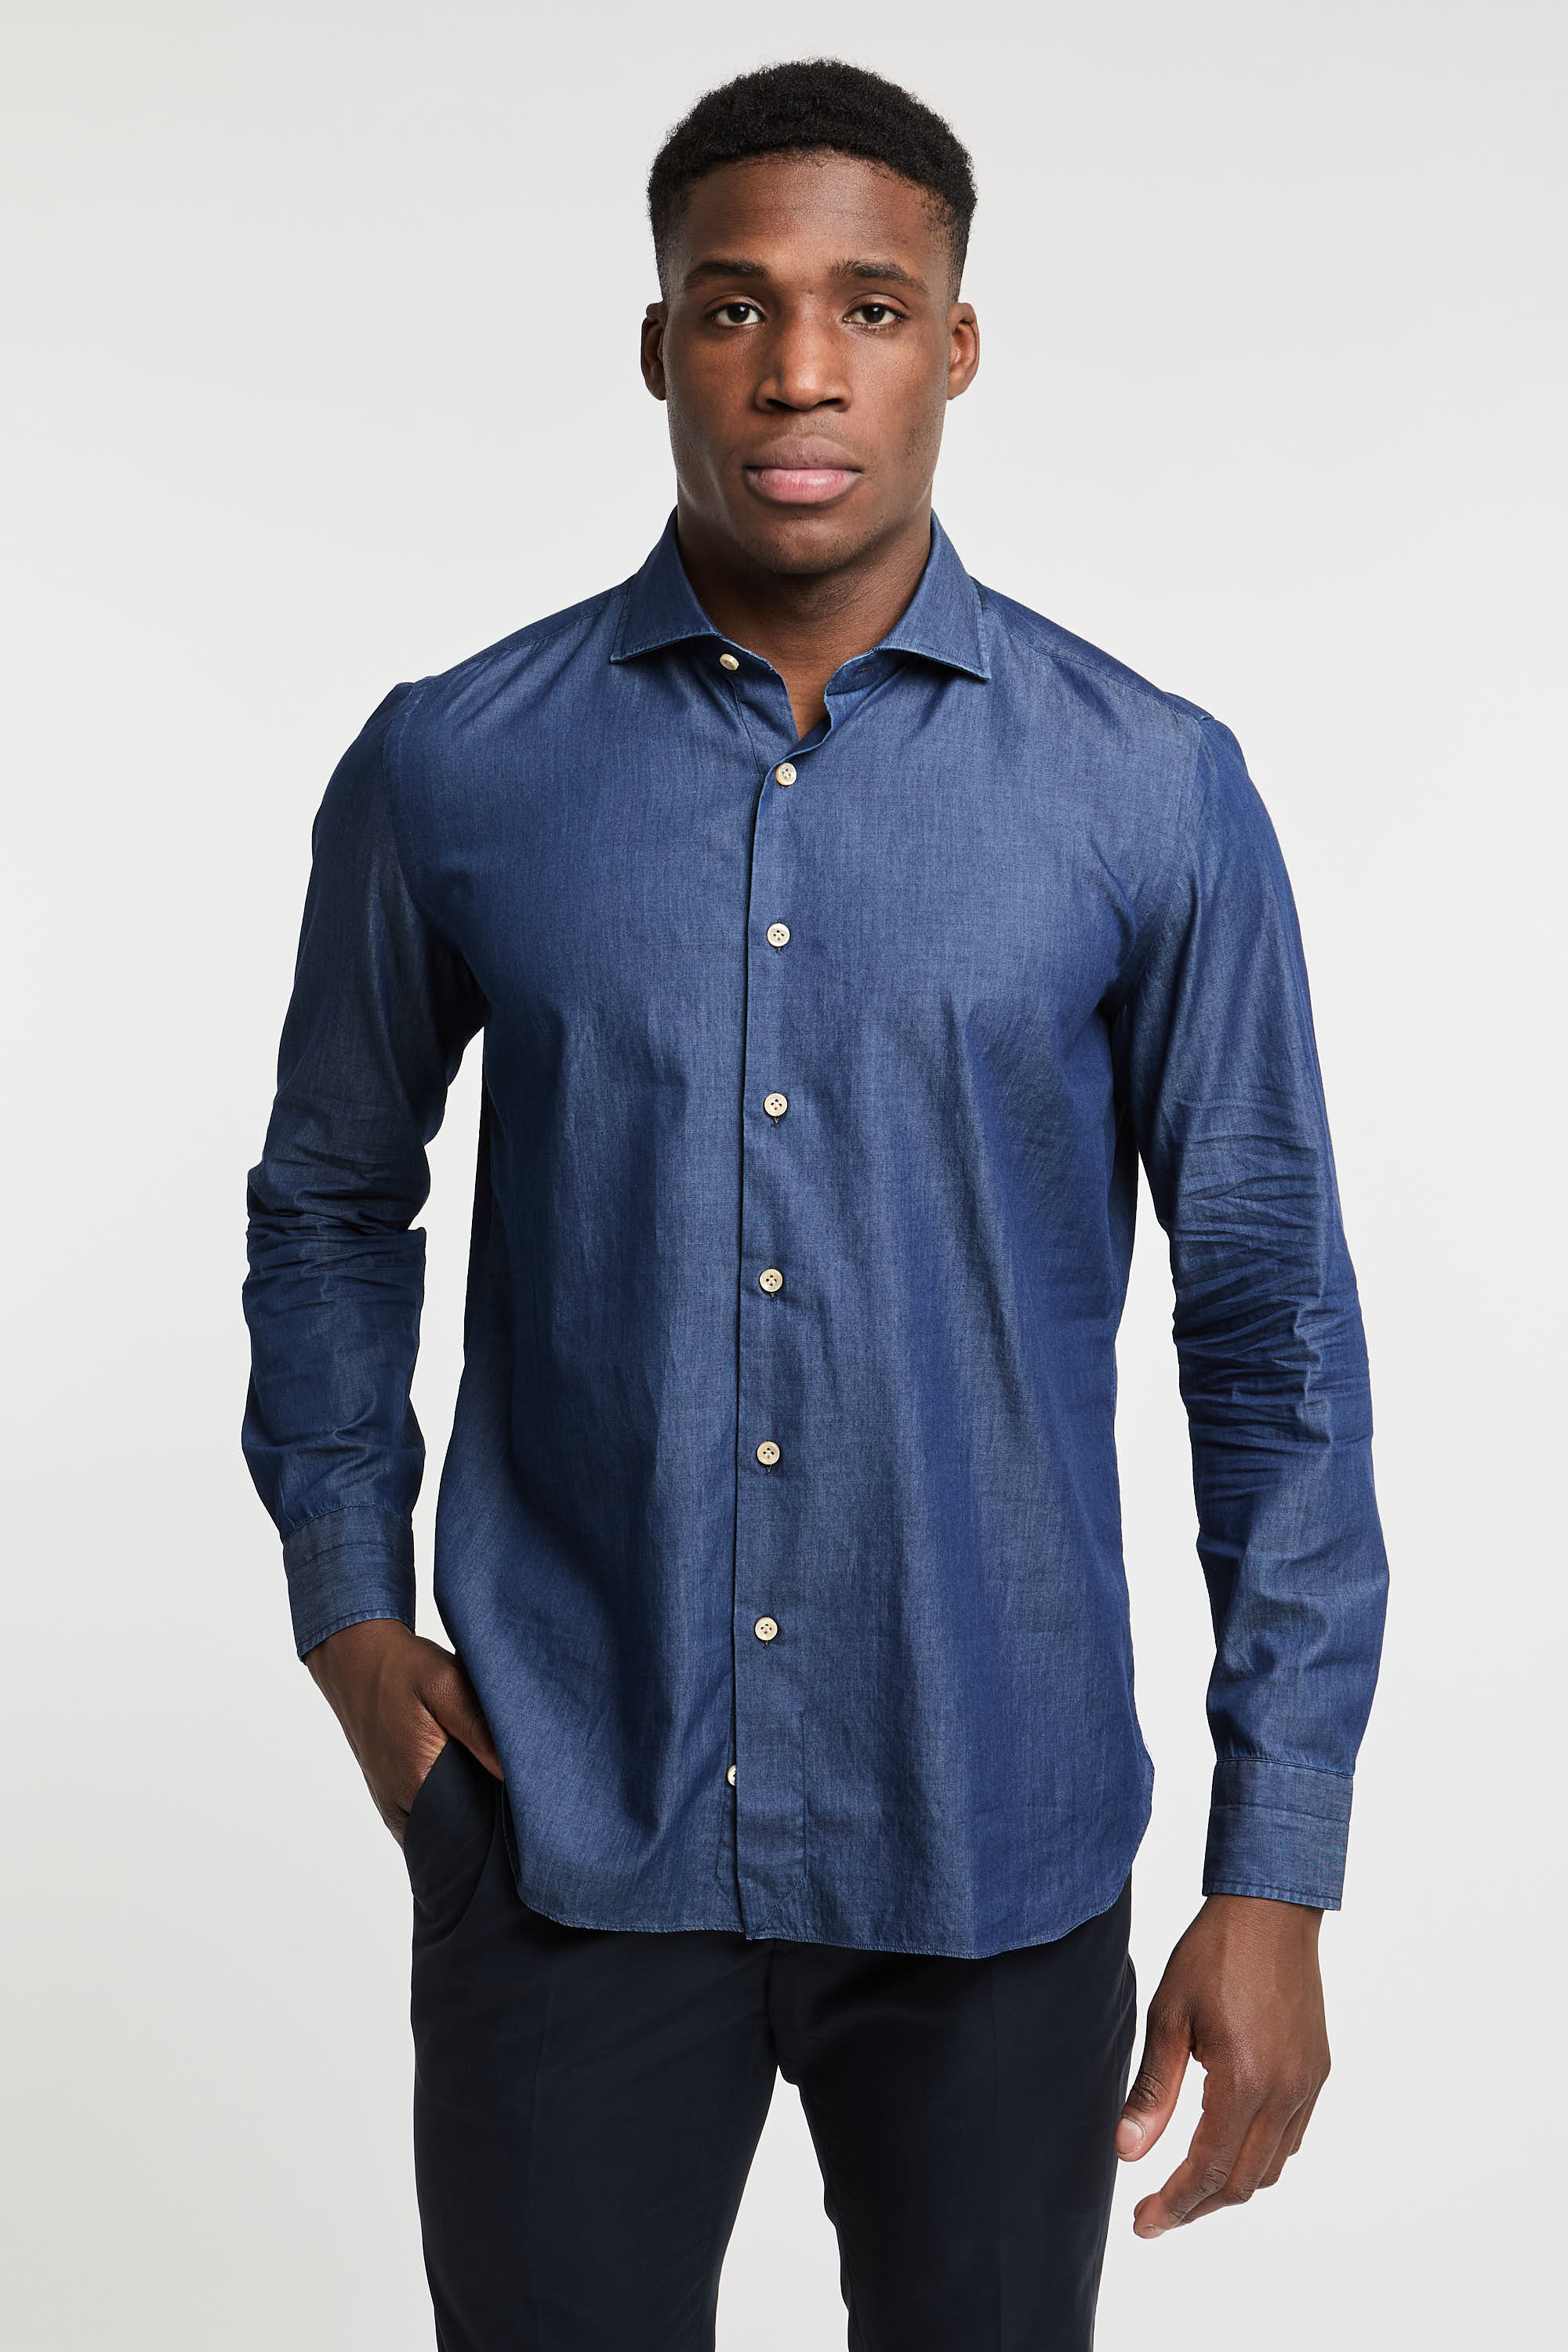 Truzzi Denim Cotton Shirt Dark Blue Color-3